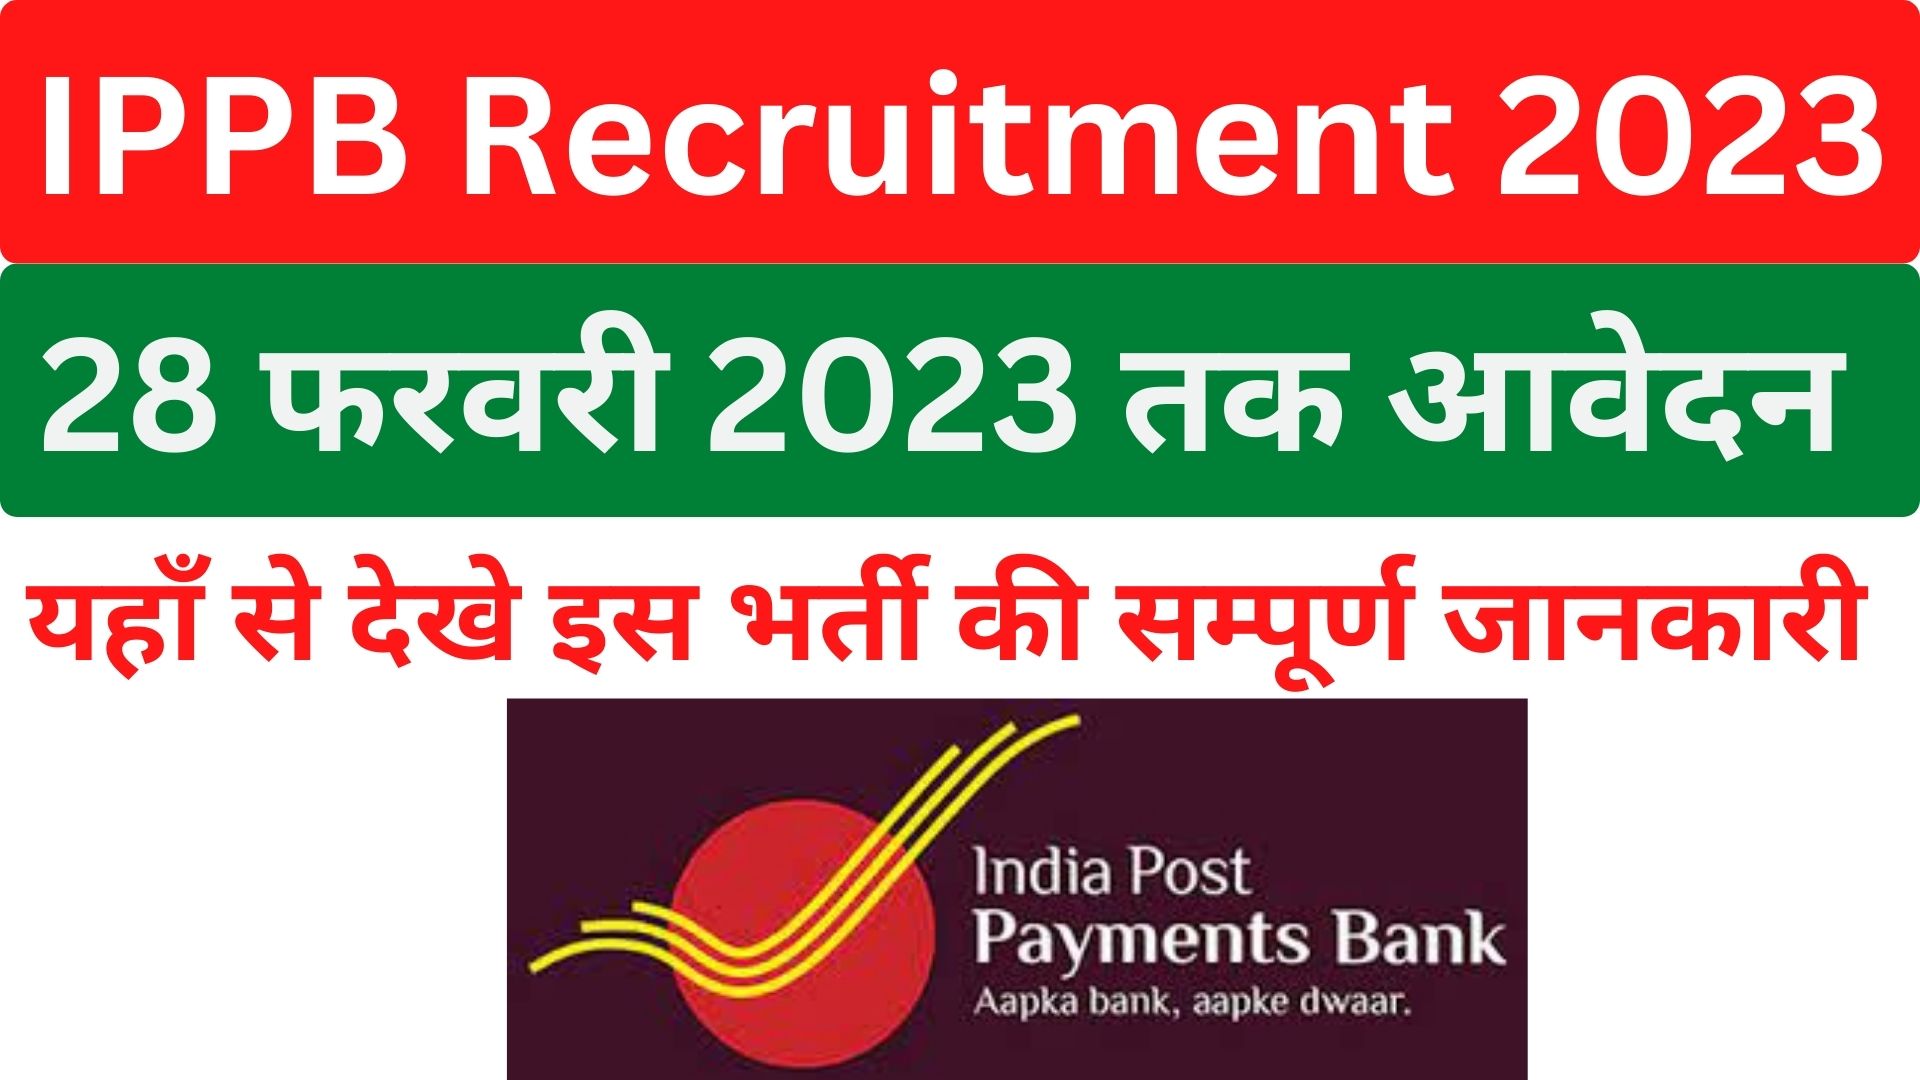 IPPB Recruitment 2023 इंडिया पोस्ट पेमेंट्स बैंक में मेनेजर के 41 पदों पर भर्ती का विज्ञापन जारी, स्नातक पास कर सकते है आवेदन